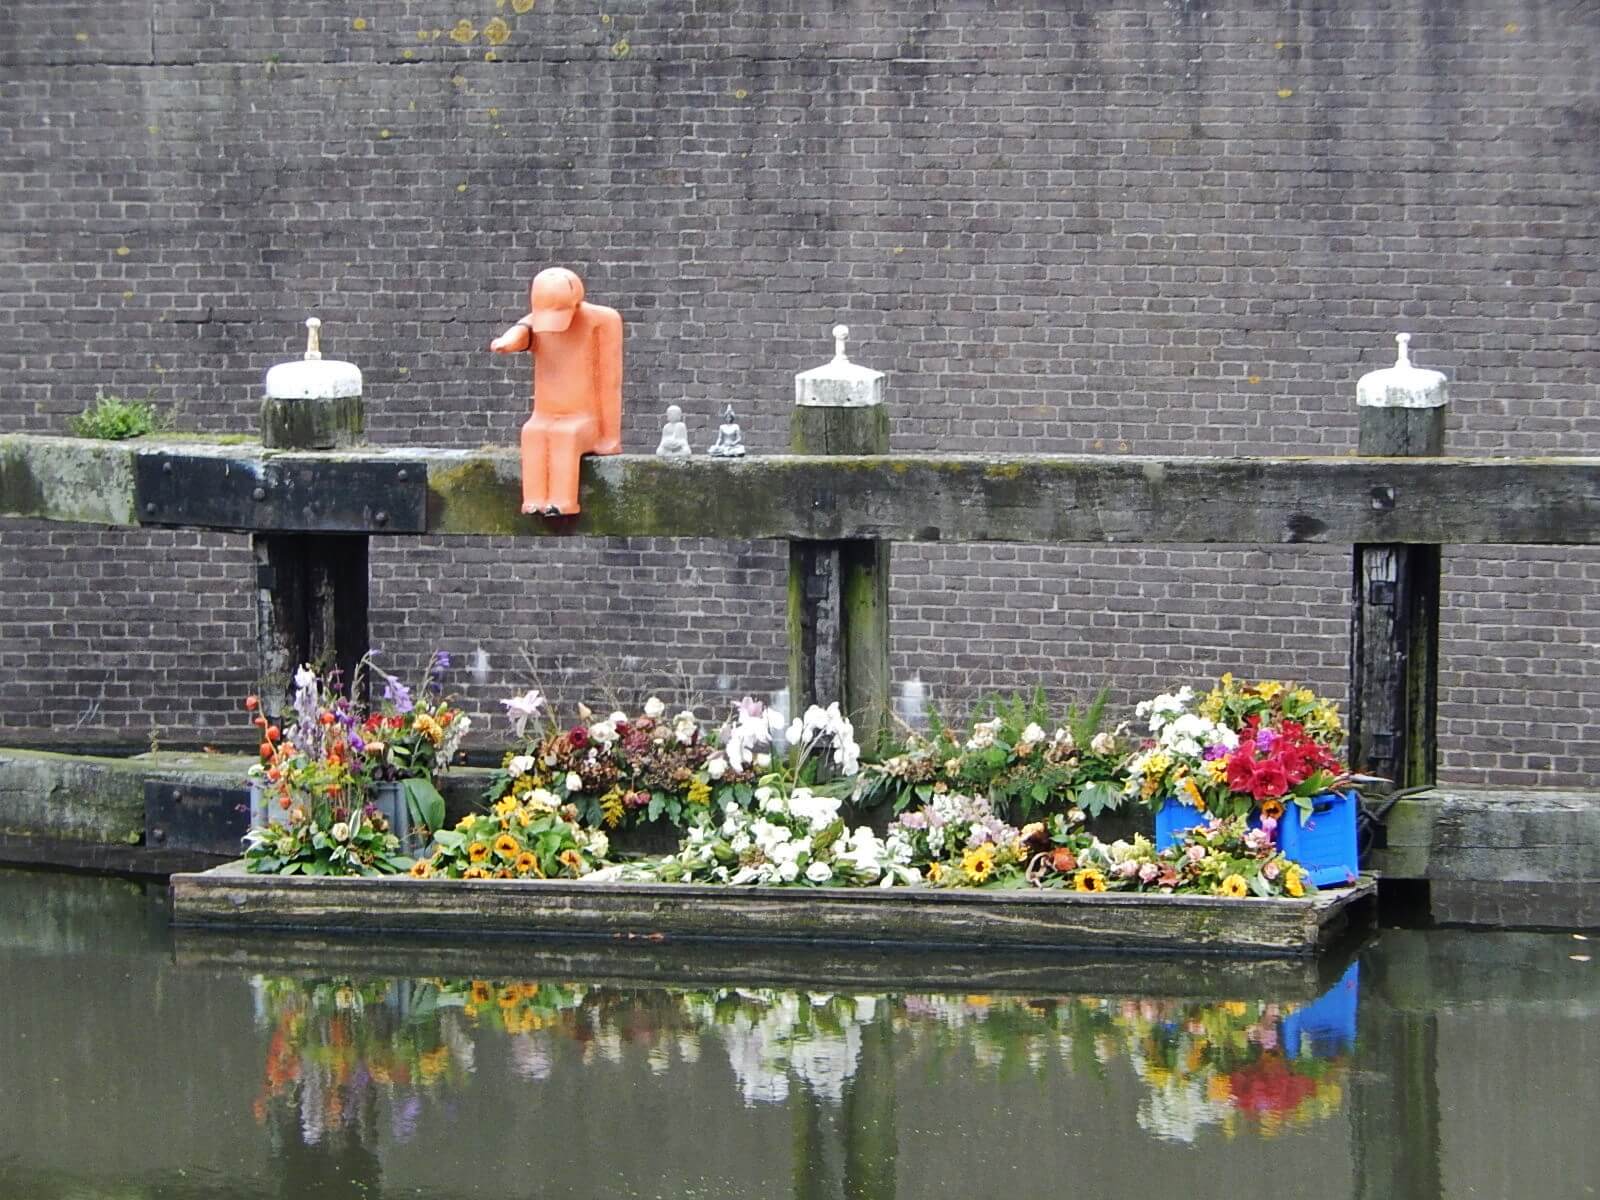 Bloemen ter nagedachtenis van de maker van het oranje kunstwerk, die omkwam bij de MH17 ramp. ©Flickr/Michael Coghlan